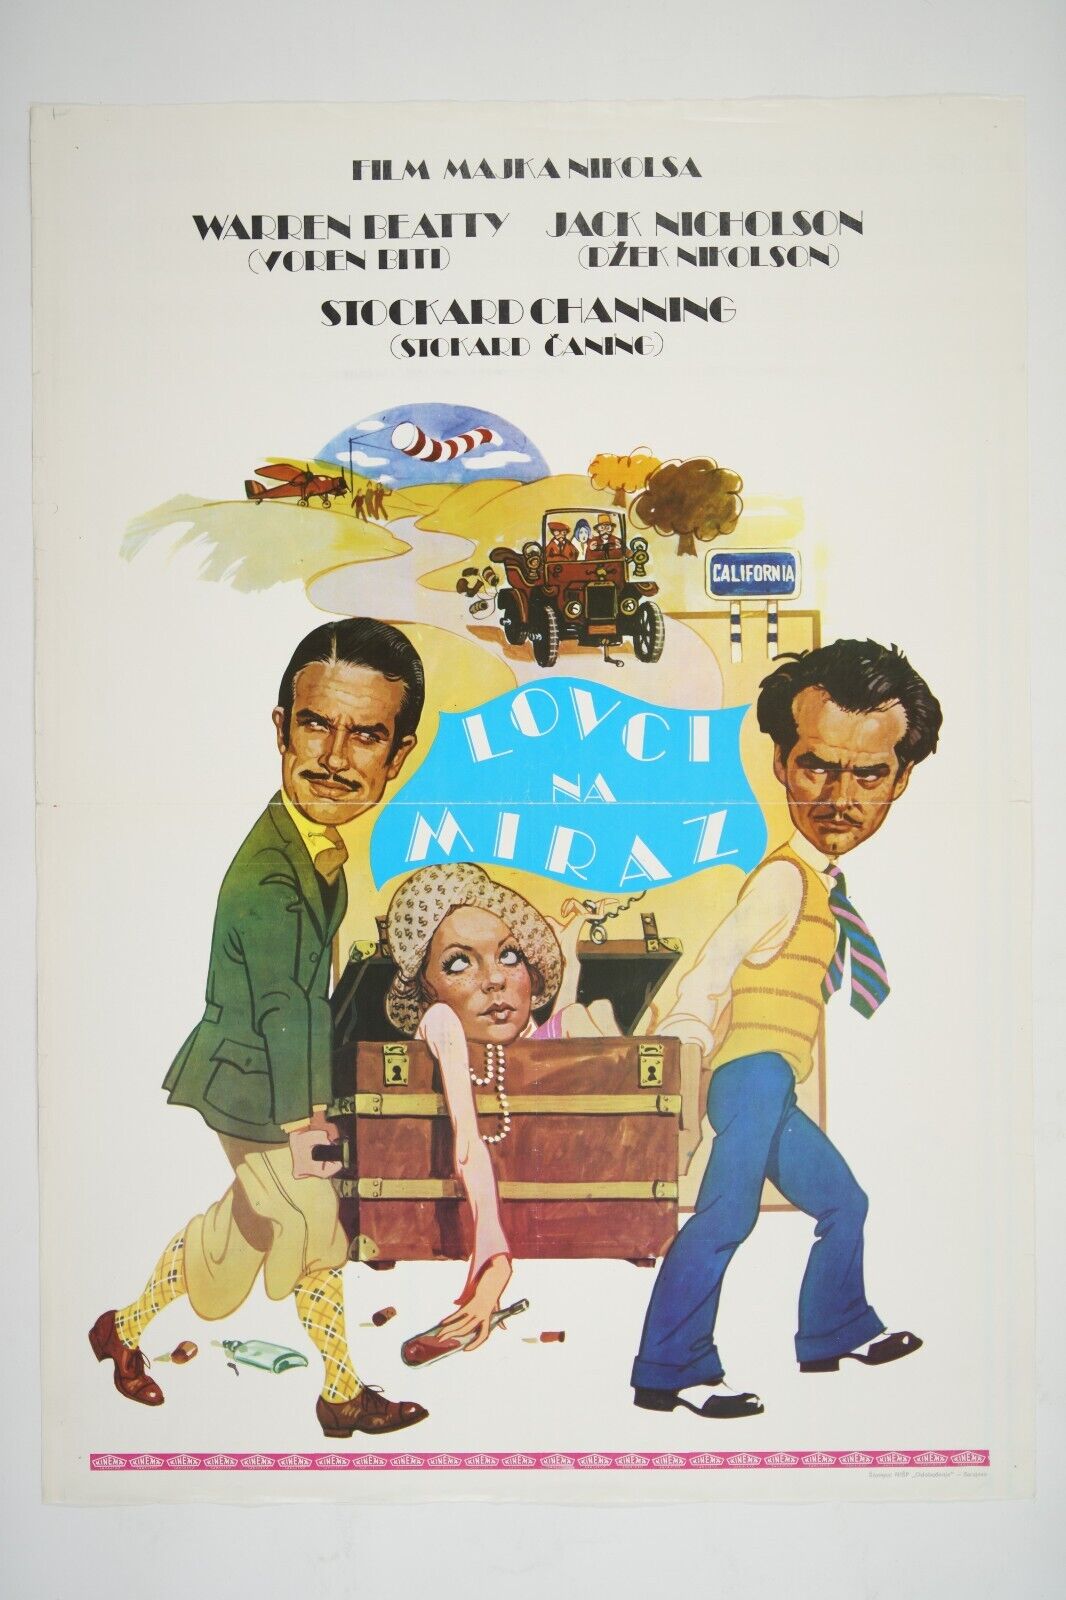 THE FORTUNE 19x28 Original exYU movie poster 1975 JACK NICHOLSON, WARREN BEATTY